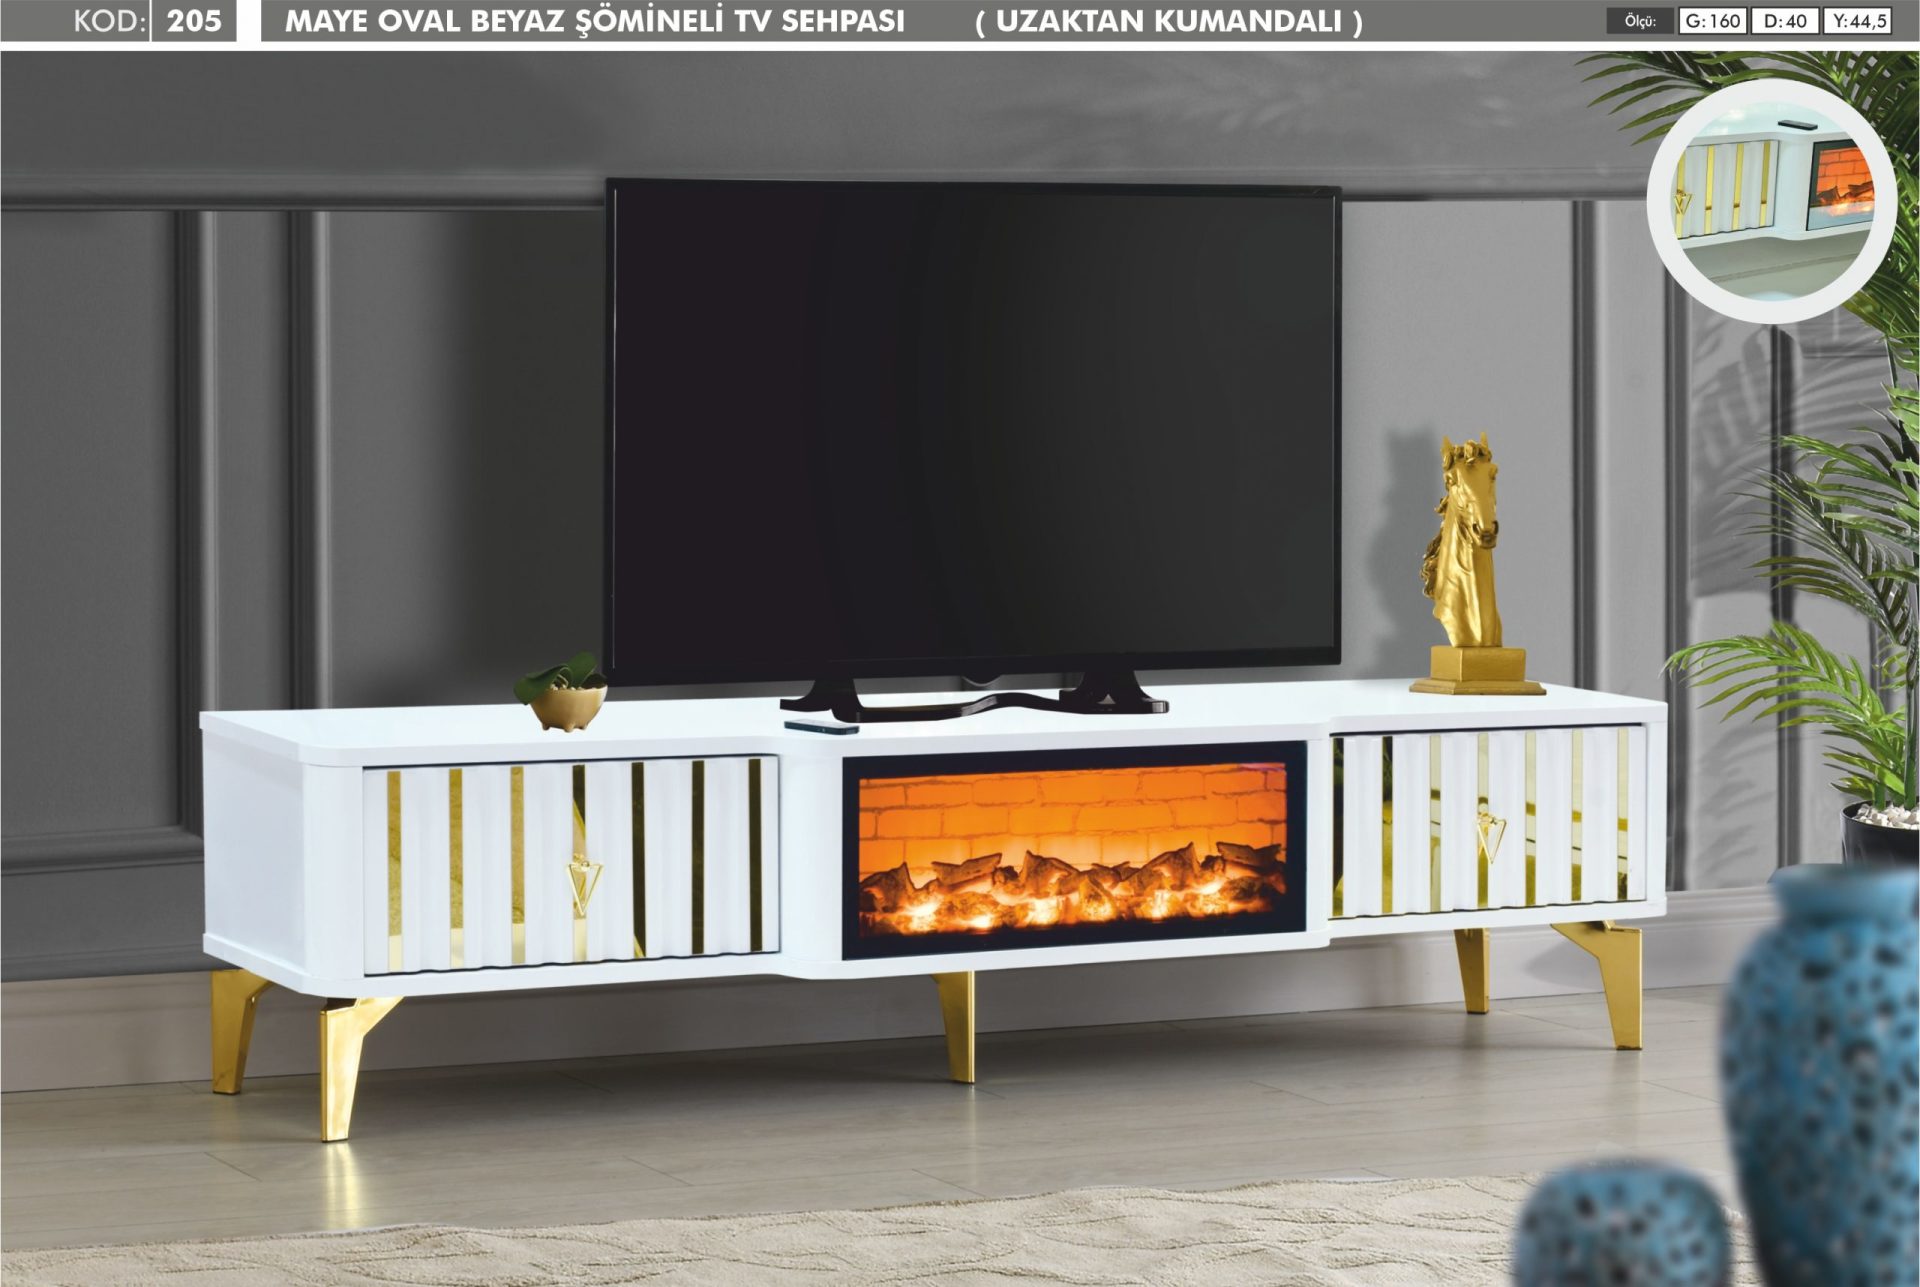 Maye Oval Gold Detaylı Beyaz Şömineli Televizyon(TV) Sehpası Uzaktan Kumandalı